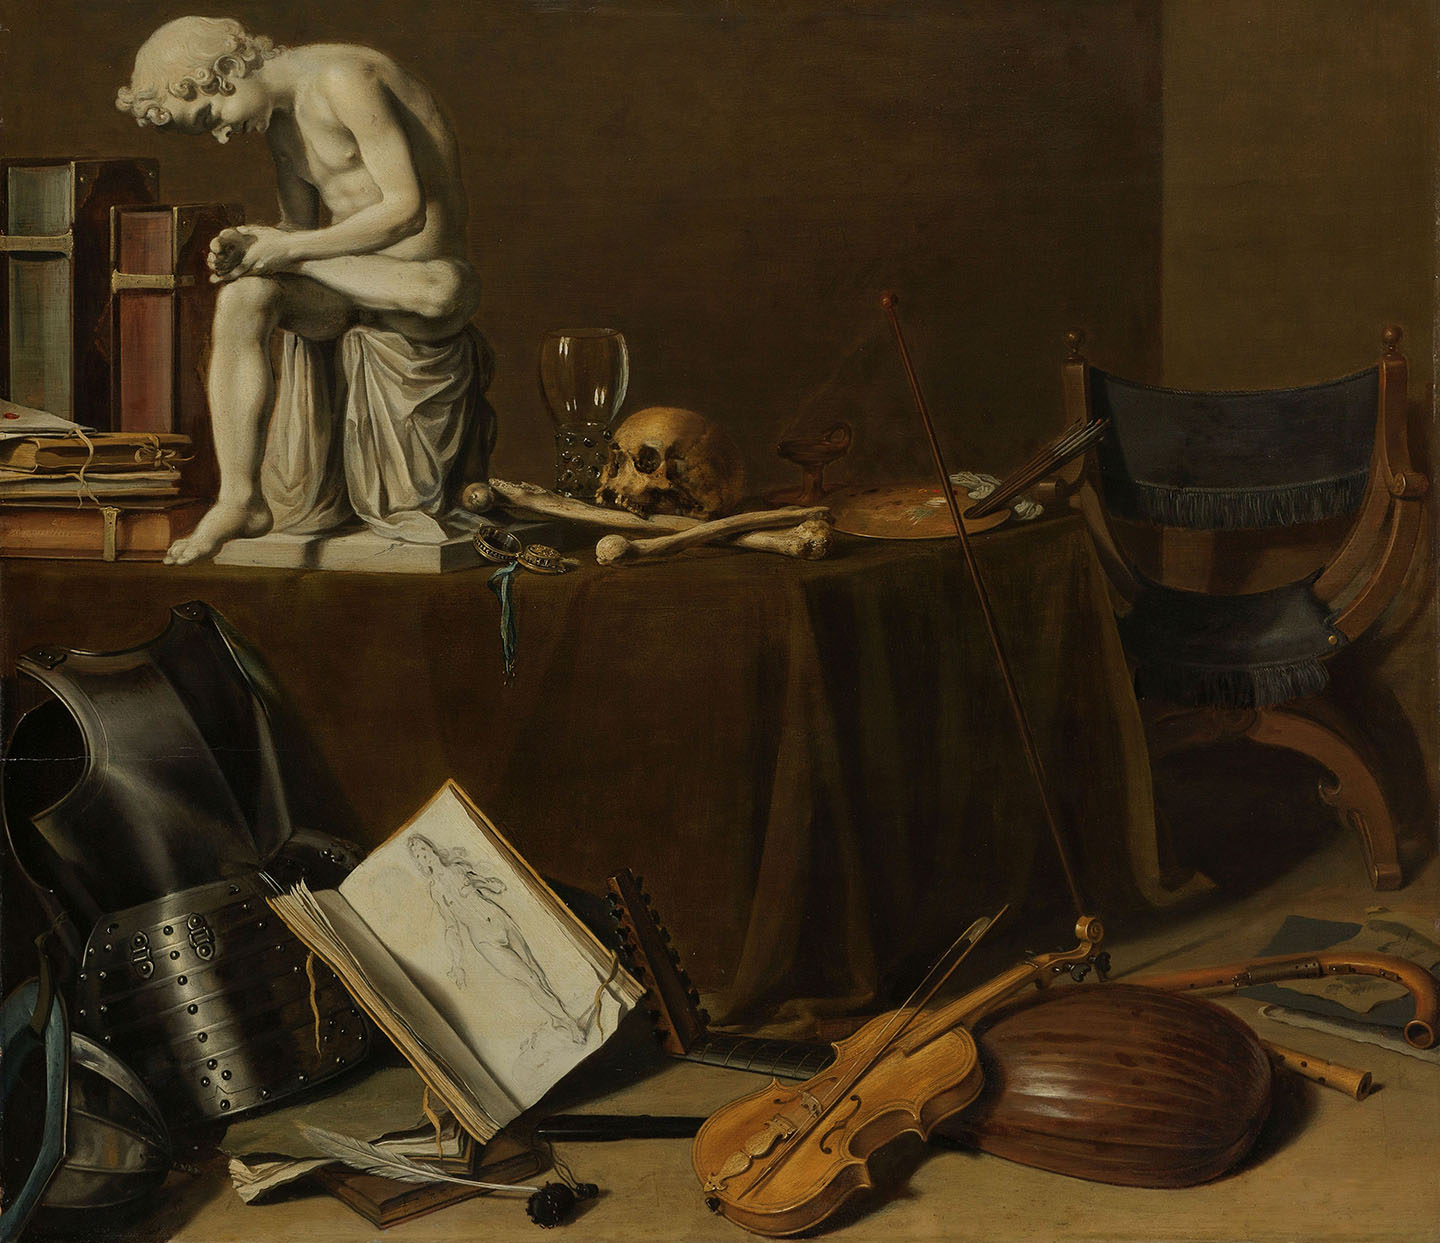 Tác phẩm “Vanitas Still Life With the Spinario” (Tranh tĩnh vật vanitas cùng tượng Spinario) năm 1628, của họa sĩ Pieter Claesz. Sơn dầu trên bảng vẽ; 27 1/2 inch x 31 1/4 inch (~70cm x 79cm). Bảo tàng Rijksmuseum, Amsterdam. (Ảnh: Tư liệu công cộng)